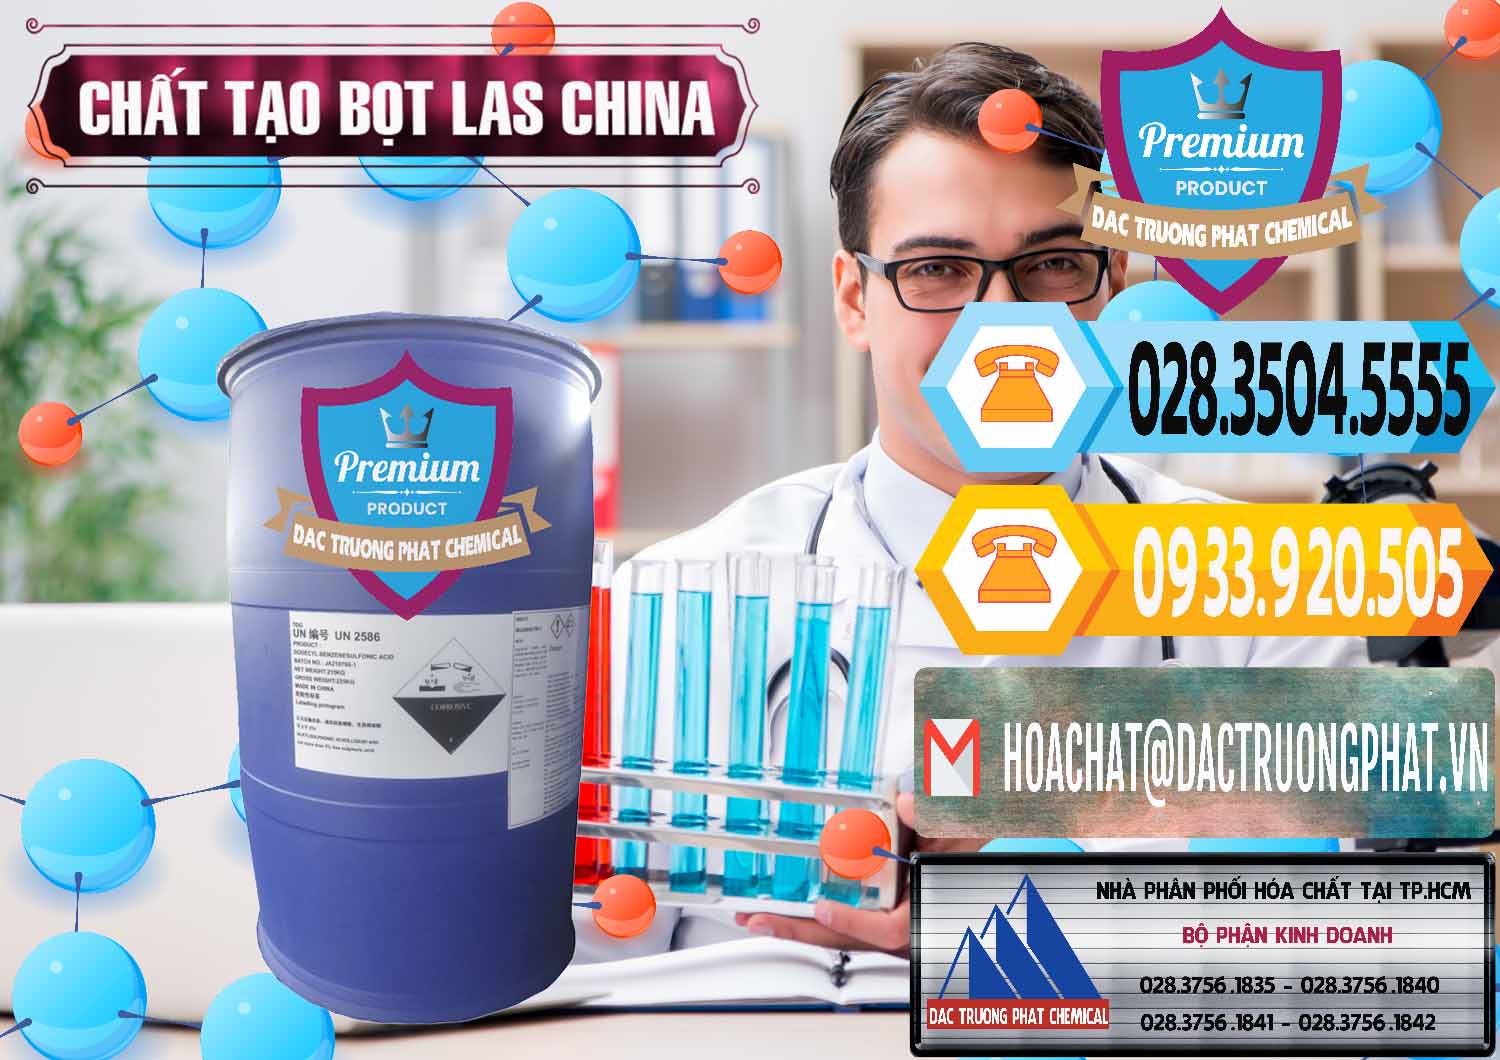 Nhà nhập khẩu và bán Chất tạo bọt Las Trung Quốc China - 0451 - Đơn vị kinh doanh & cung cấp hóa chất tại TP.HCM - hoachattayrua.net